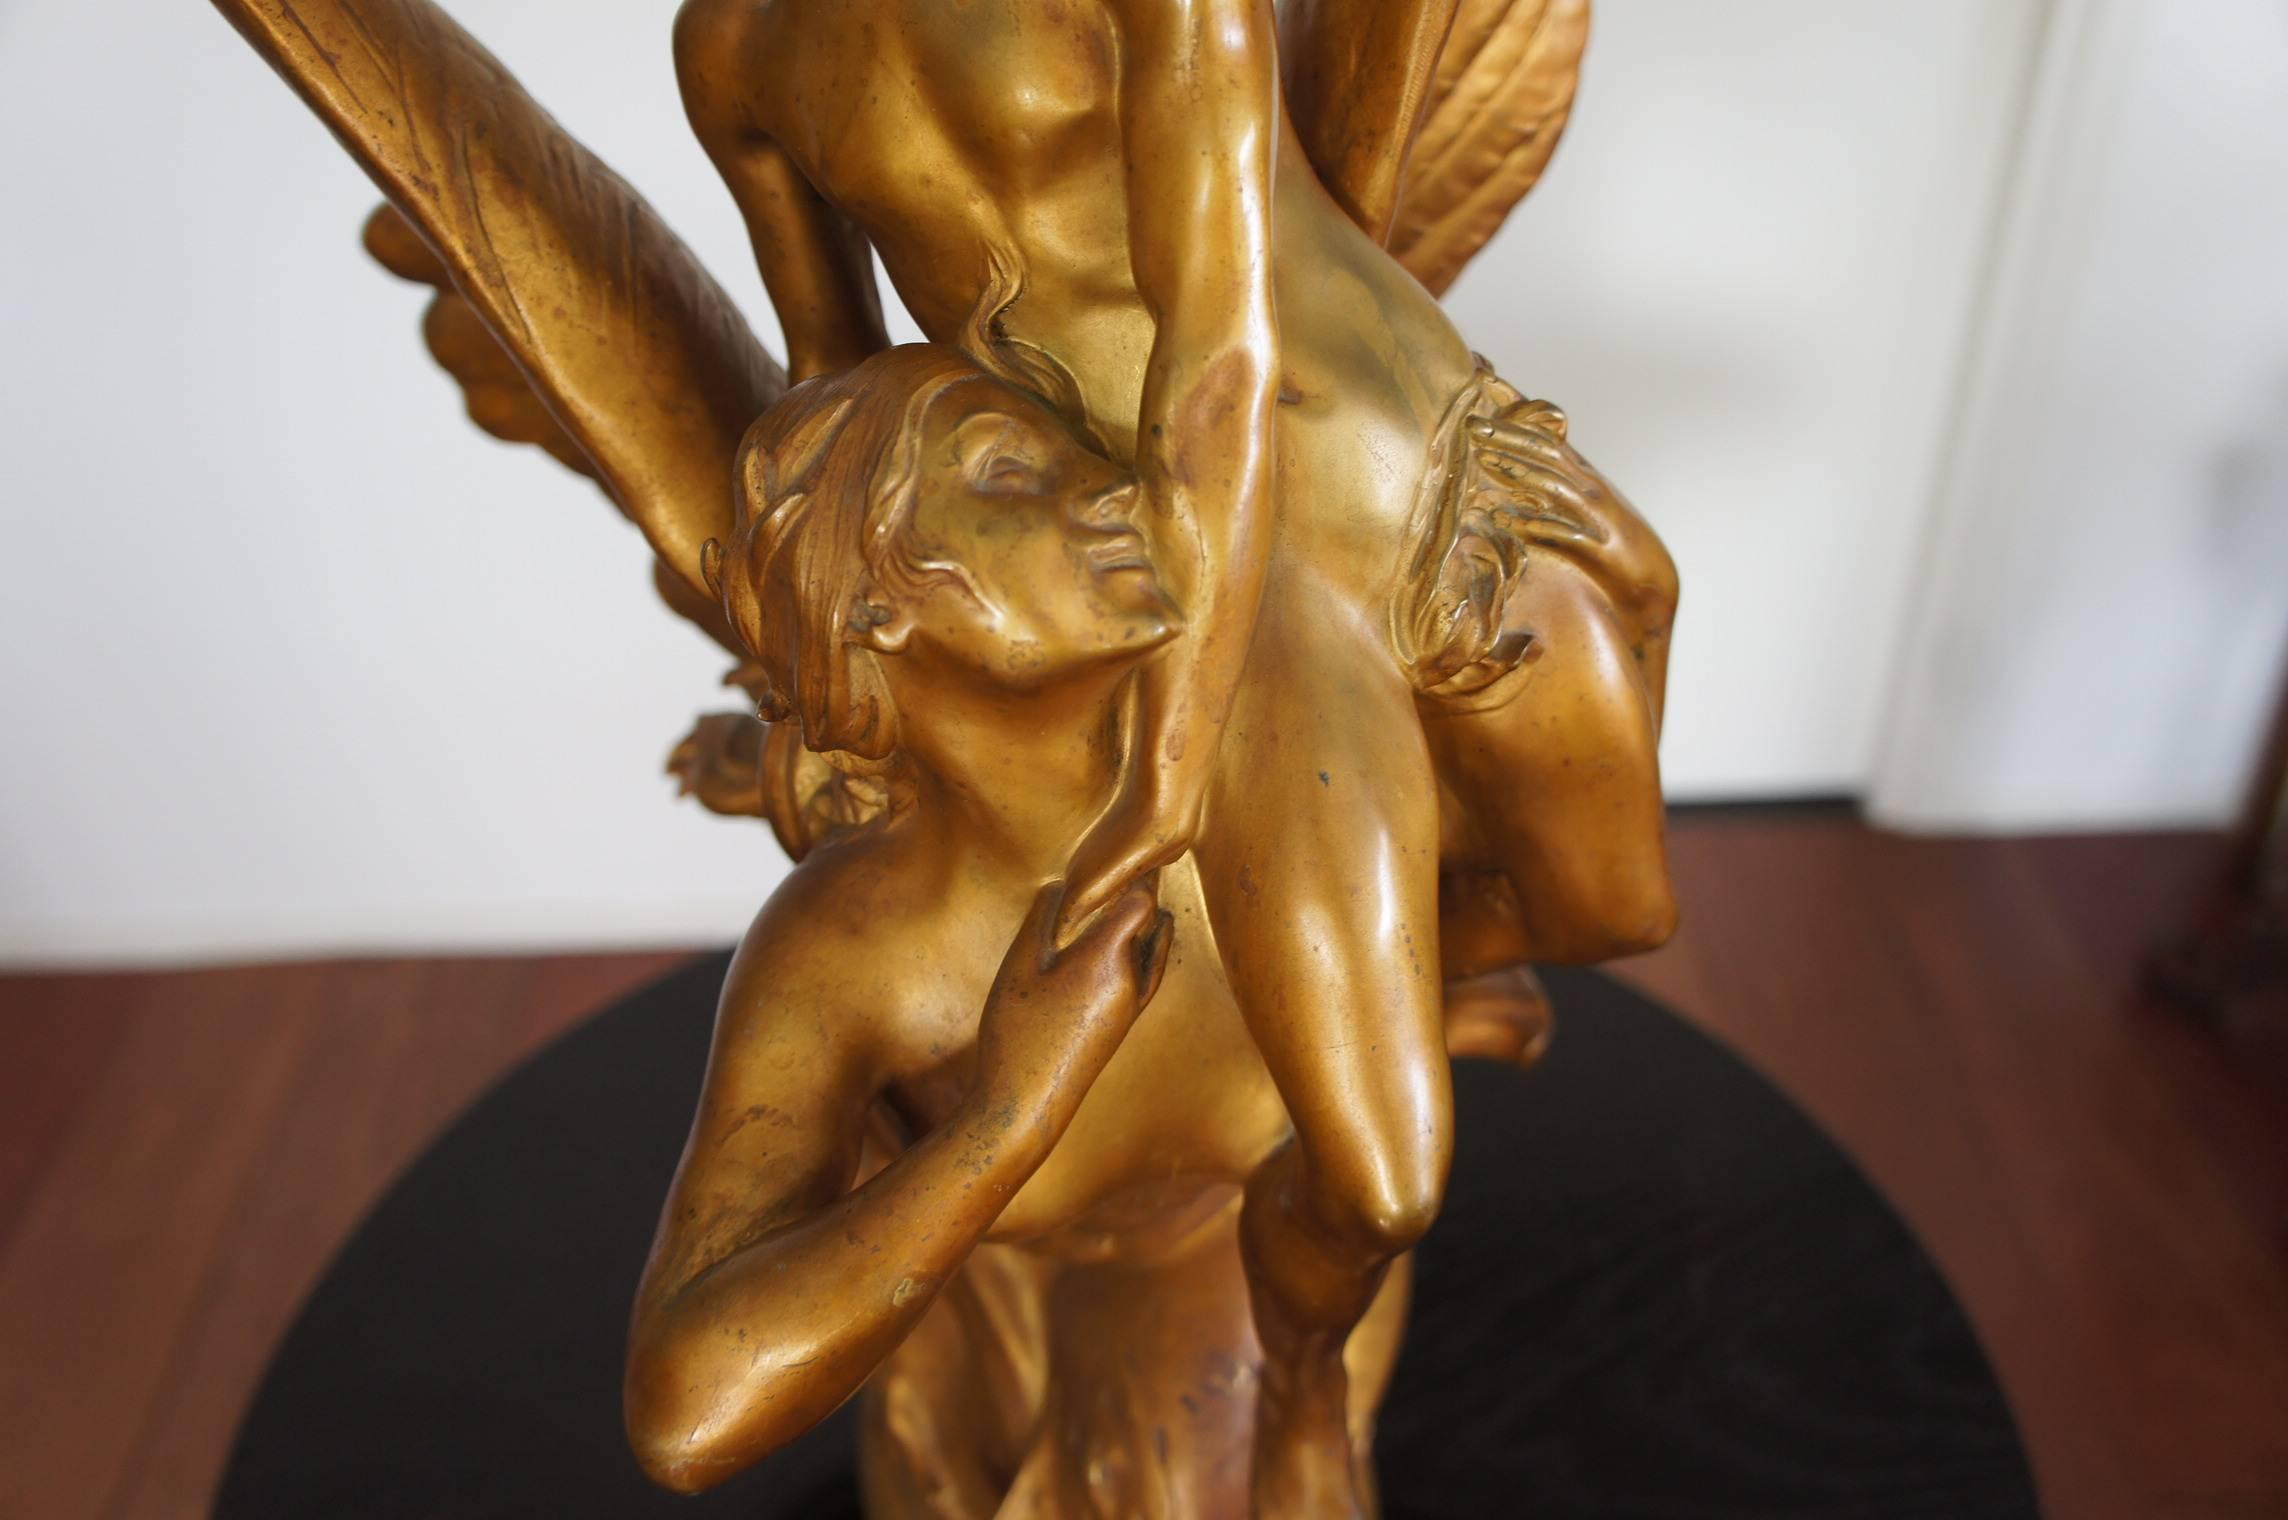 French Antique Gilt Bronze Sculpture La Sirene by Denys Puech Cast by Barbedienne Paris